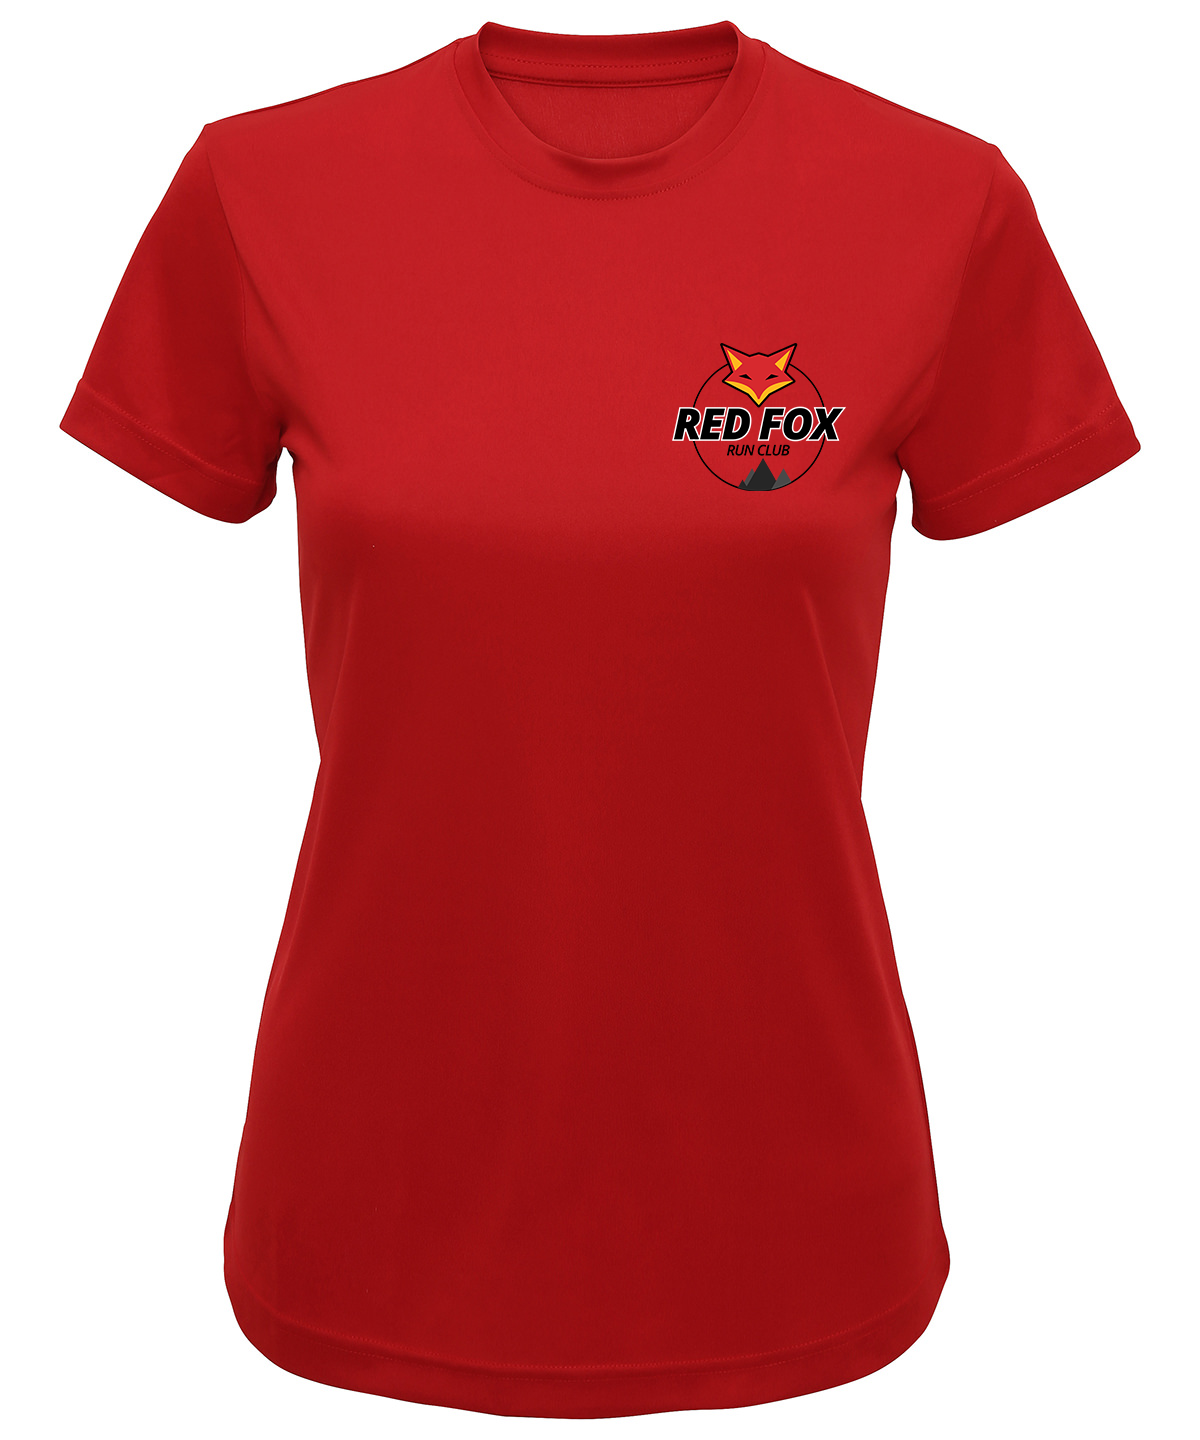 Red Fox Technical T-Shirt (Womens)